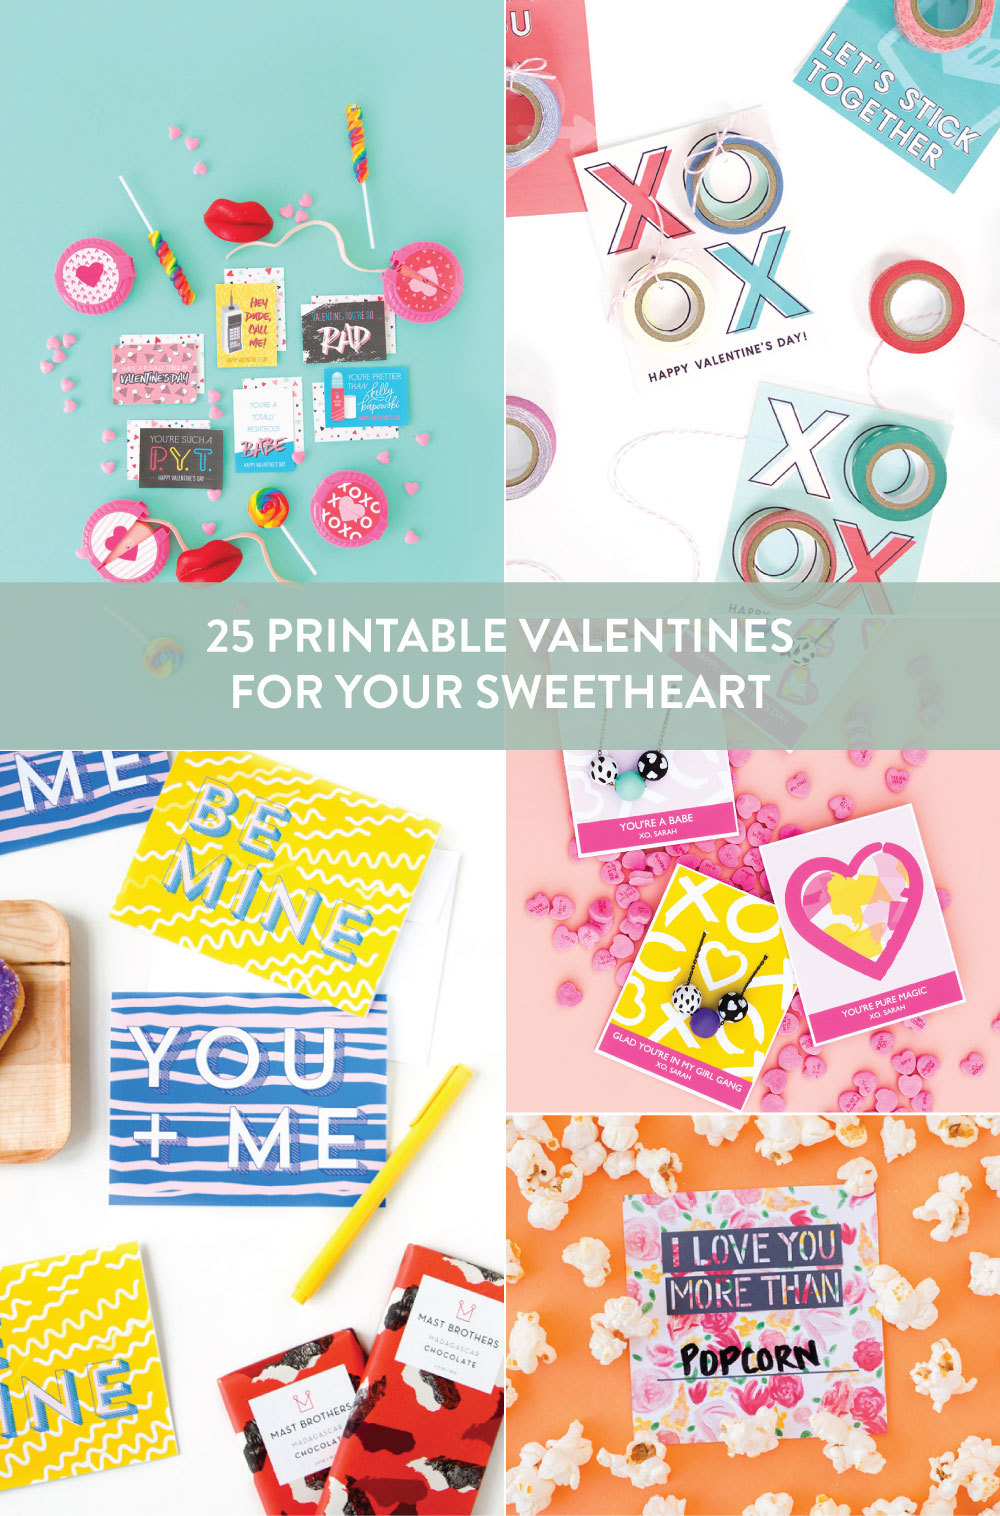 Valentine's day card designs